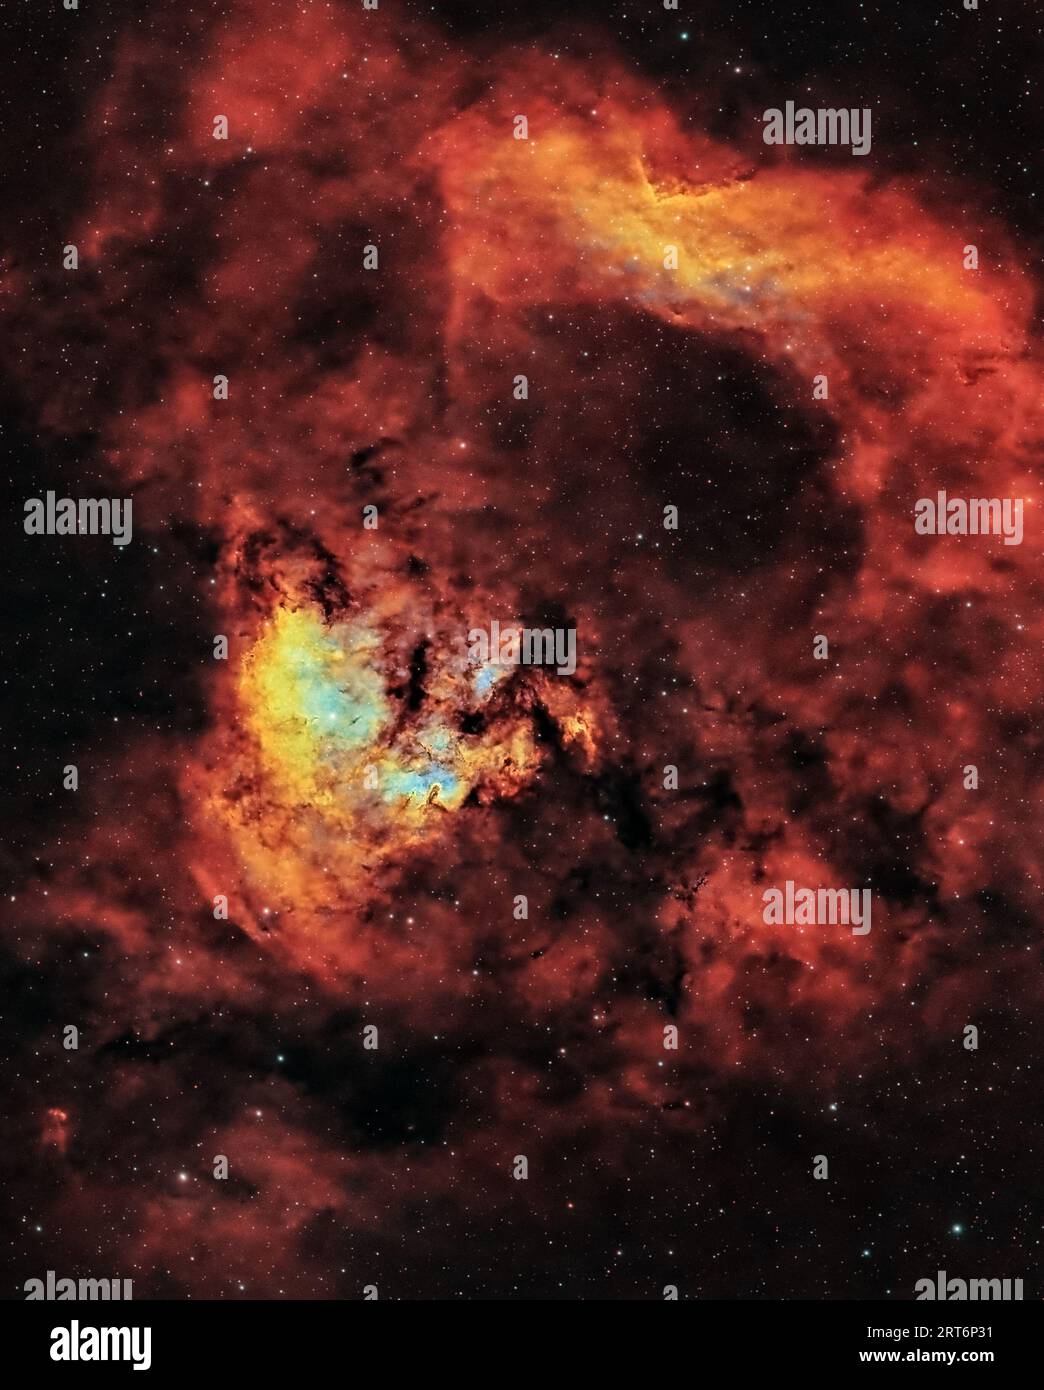 Ammira l'inquietante bellezza della nebulosa del teschio fiammeggiante, annidata nella distesa cosmica di Cefeo. Foto Stock